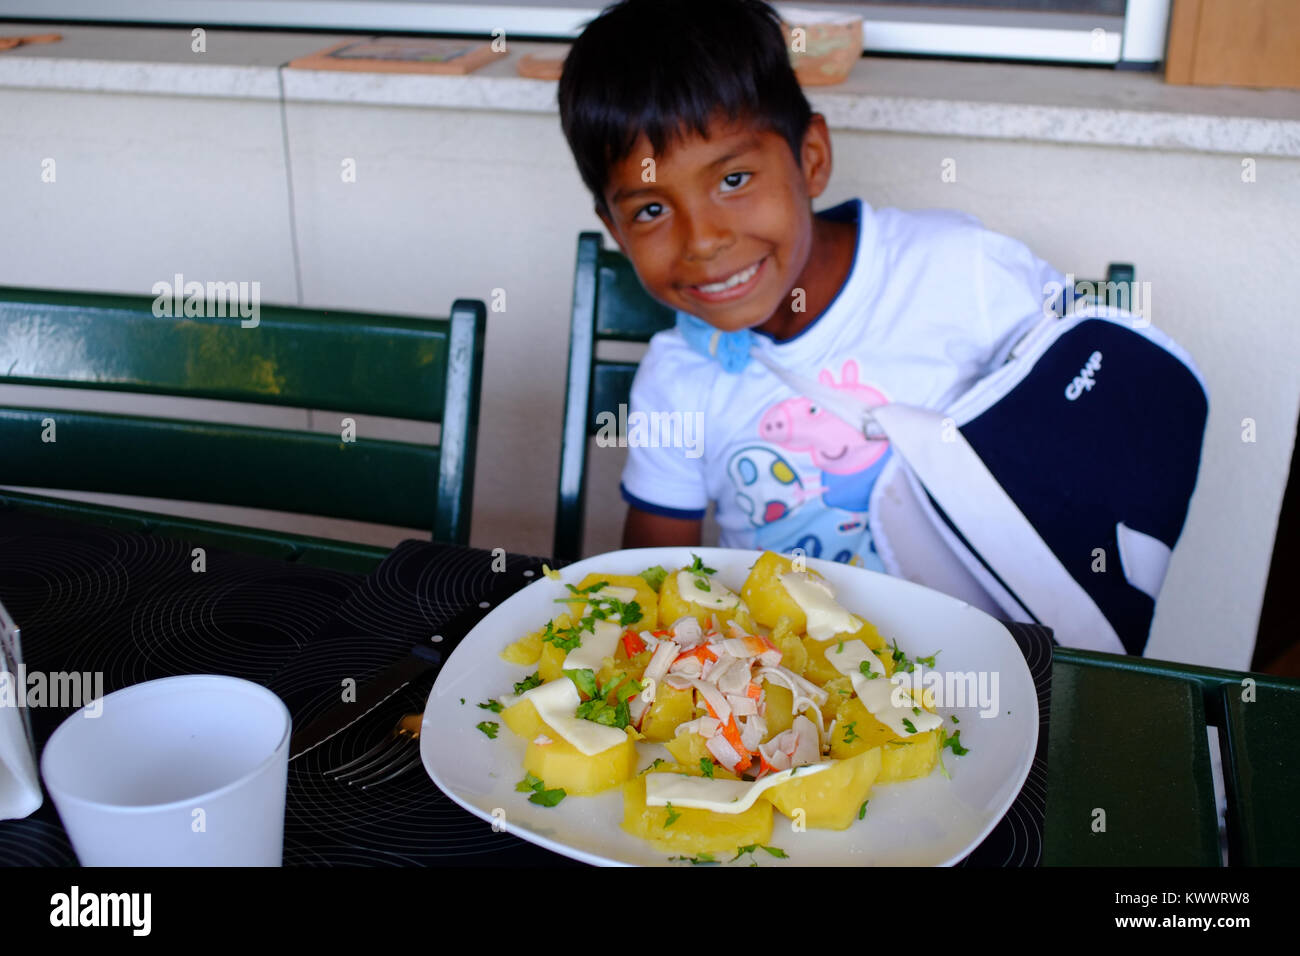 Heureux l'boy smiling heureux tandis que prêt à manger un plat typiquement italien. Florence, Italie Banque D'Images